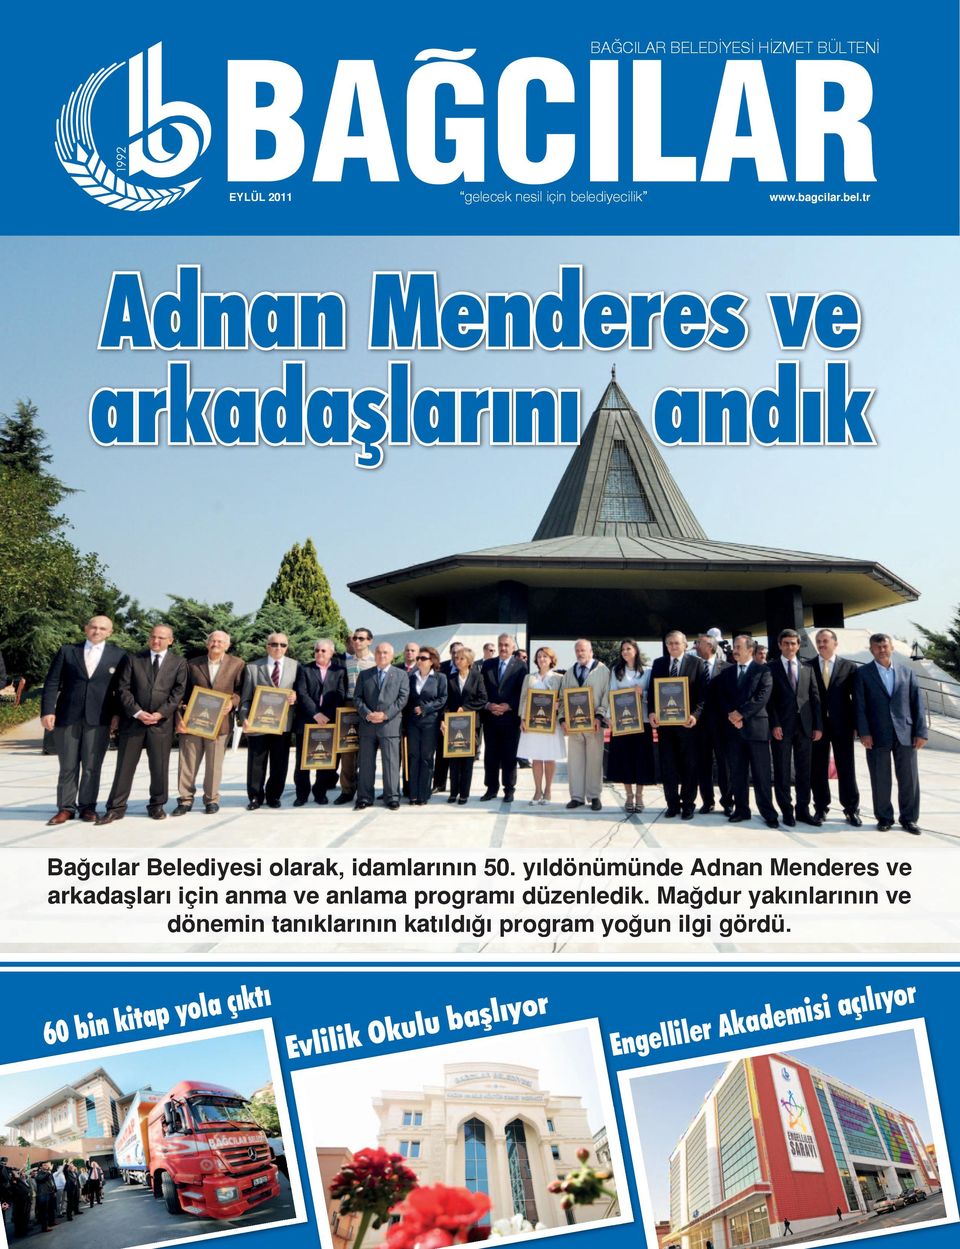 tr Adnan Menderes ve arkadaşlarını andık Bağcılar Belediyesi olarak, idamlarının 50.